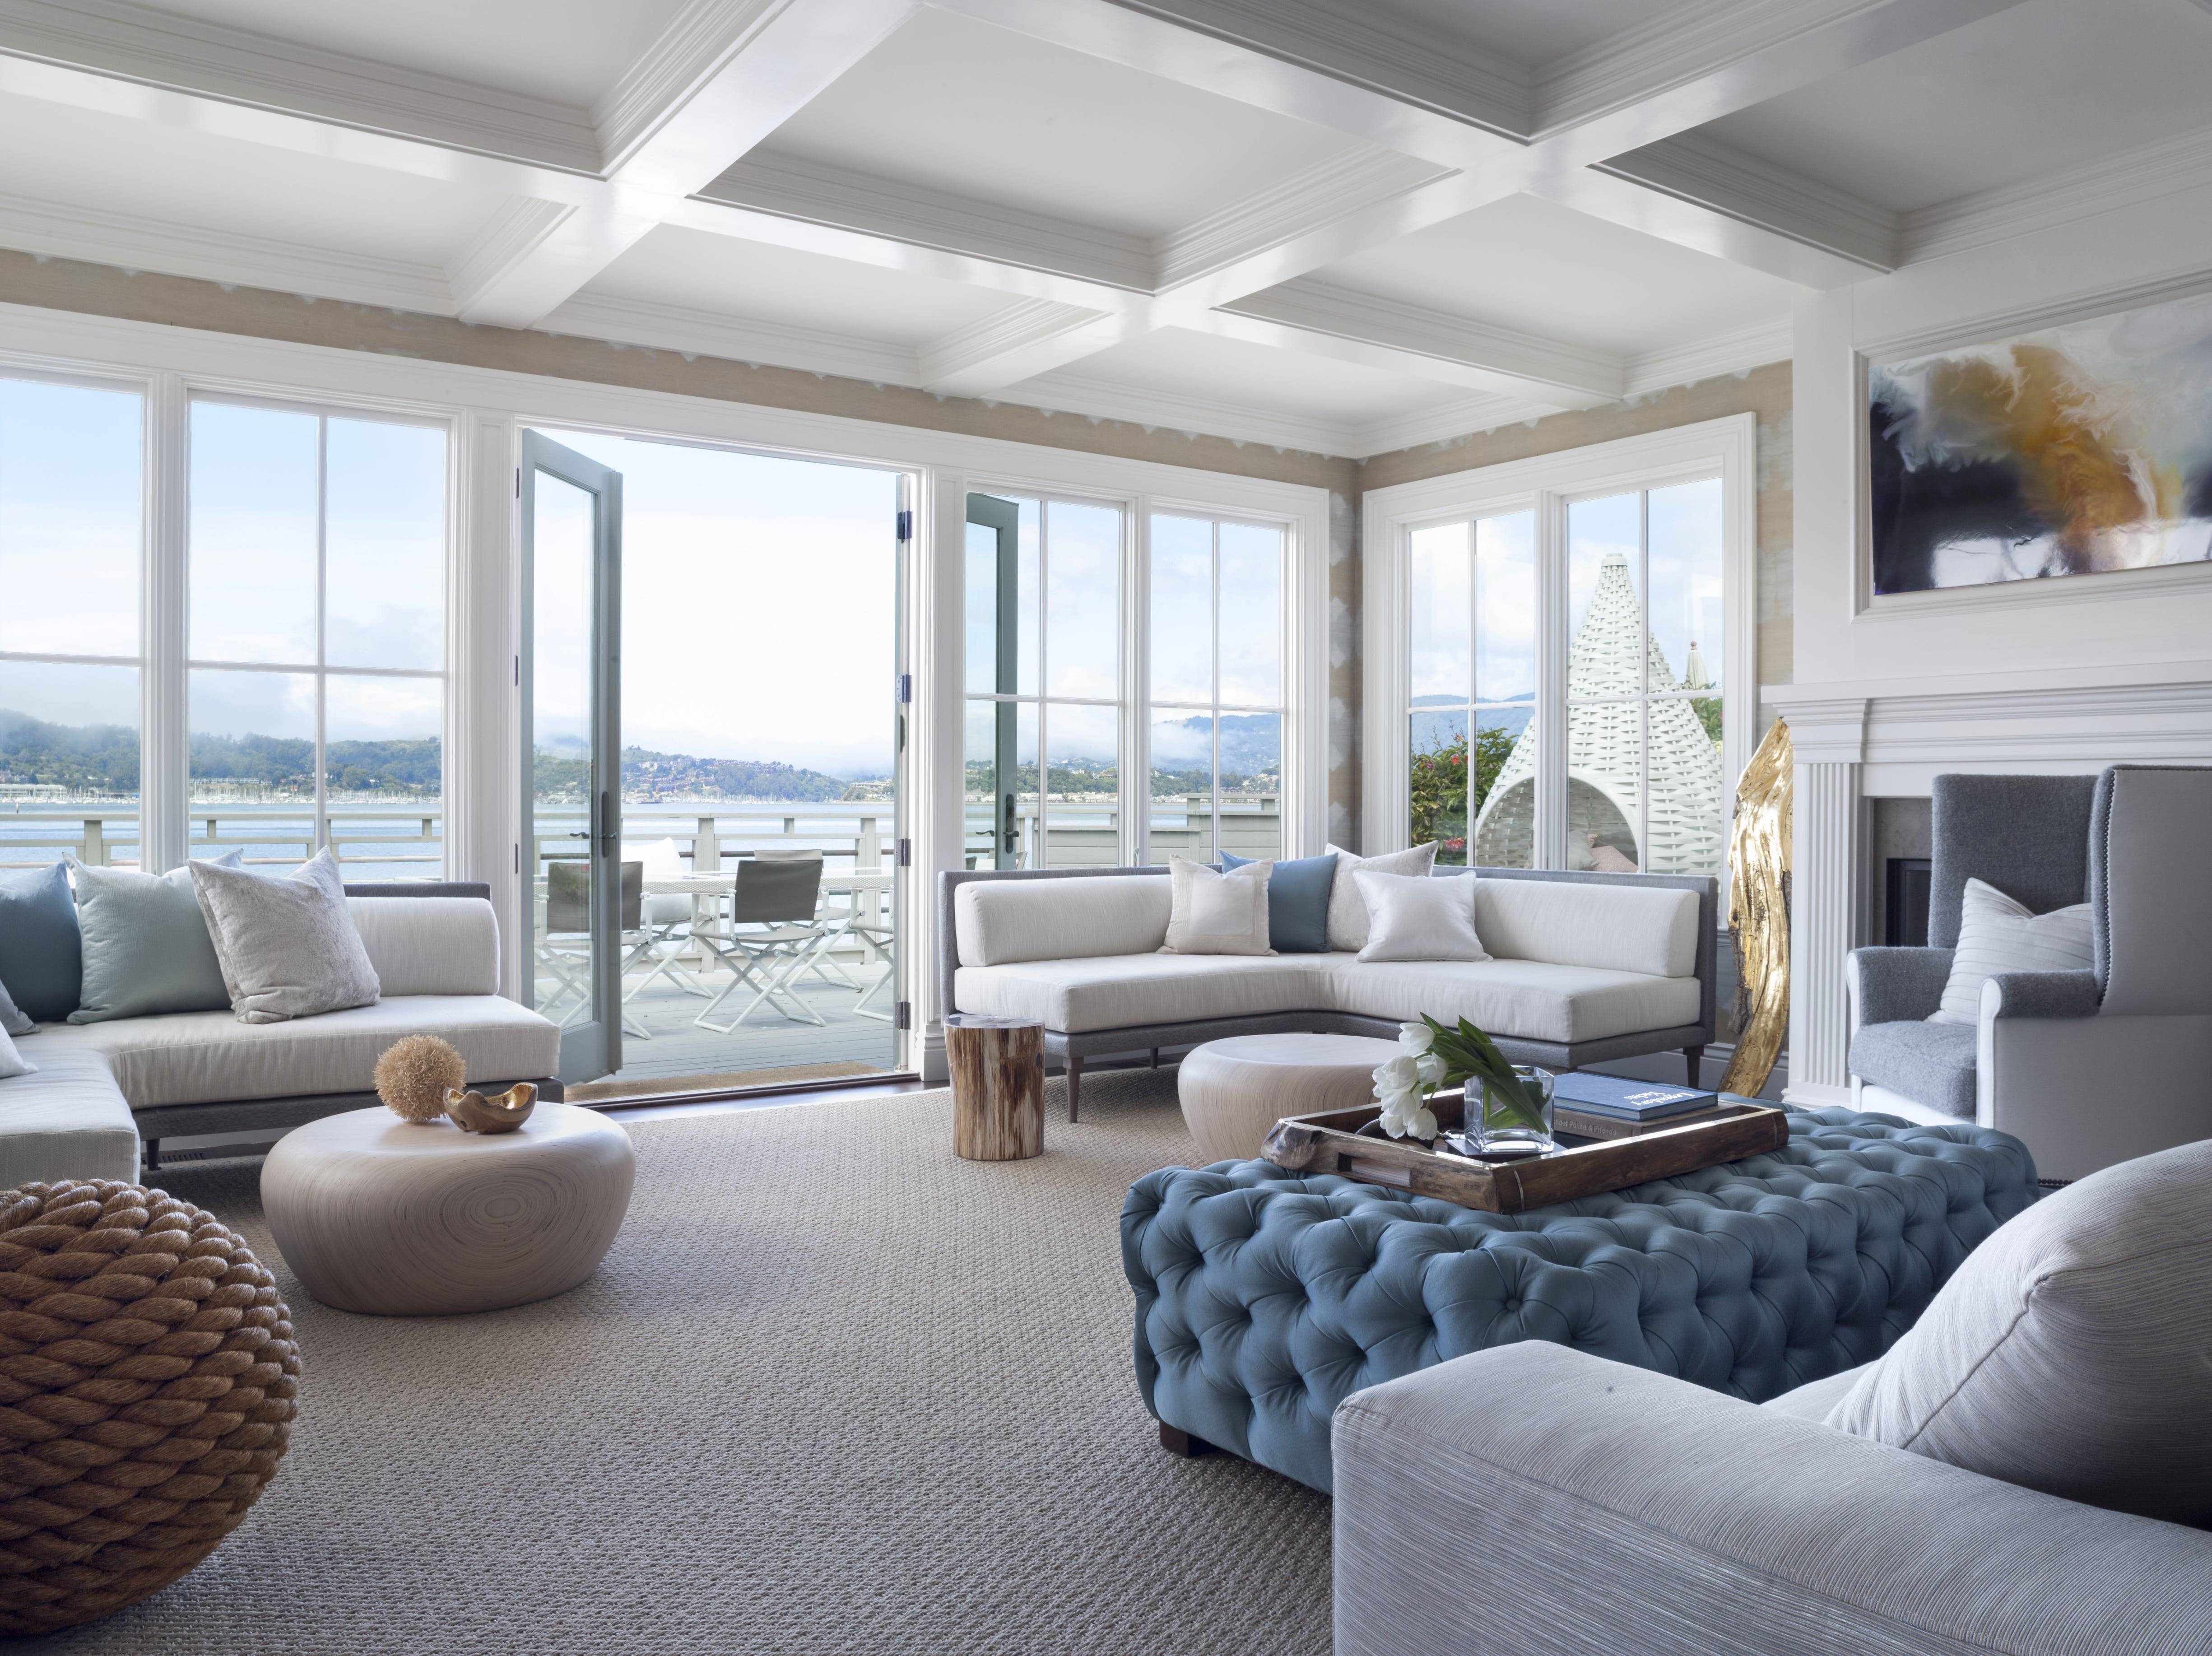 Панорамные окна в квартире: особенности установки и фото готовых решений